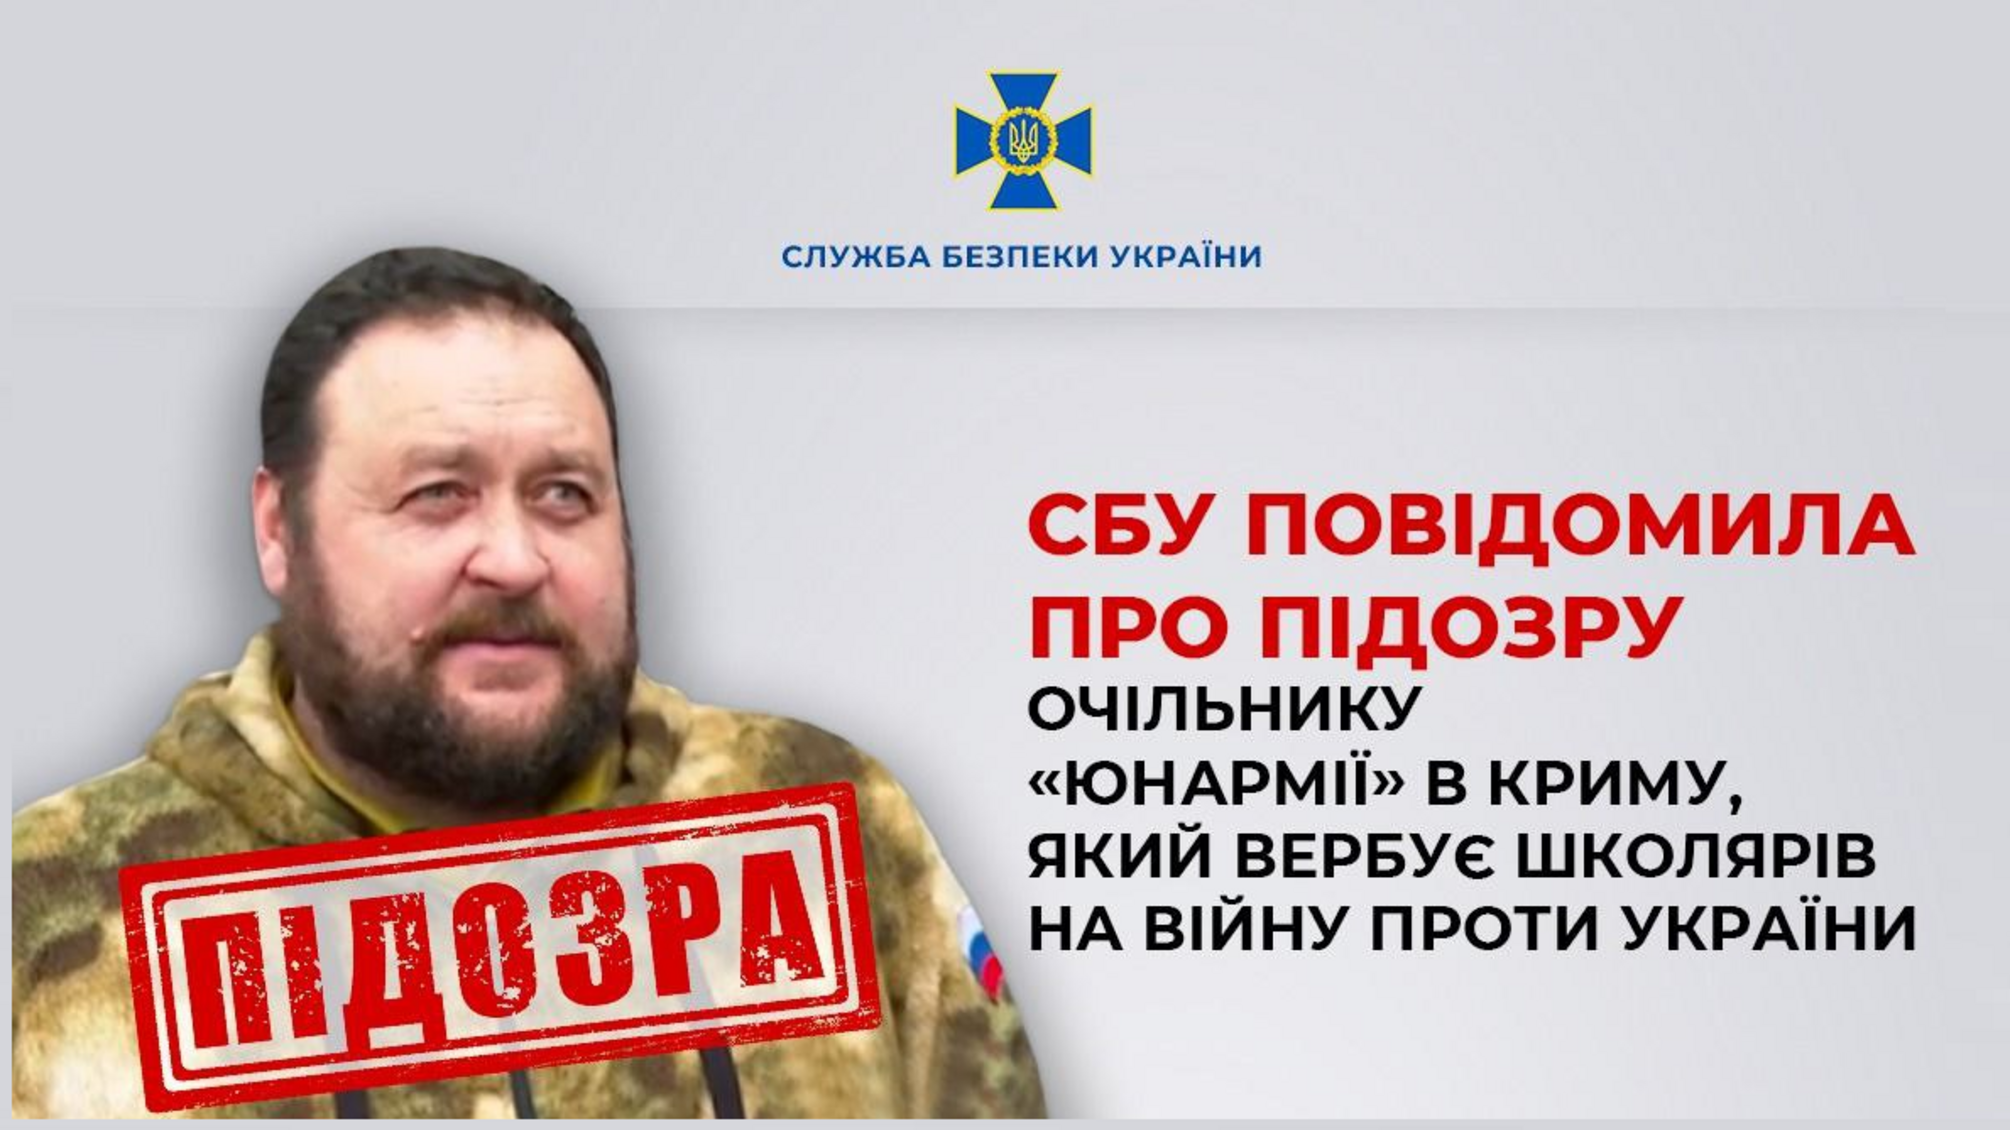 Очільник 'Юнармії' в Криму вербує школярів на війну: СБУ повідомила Гаврильчуку про підозру